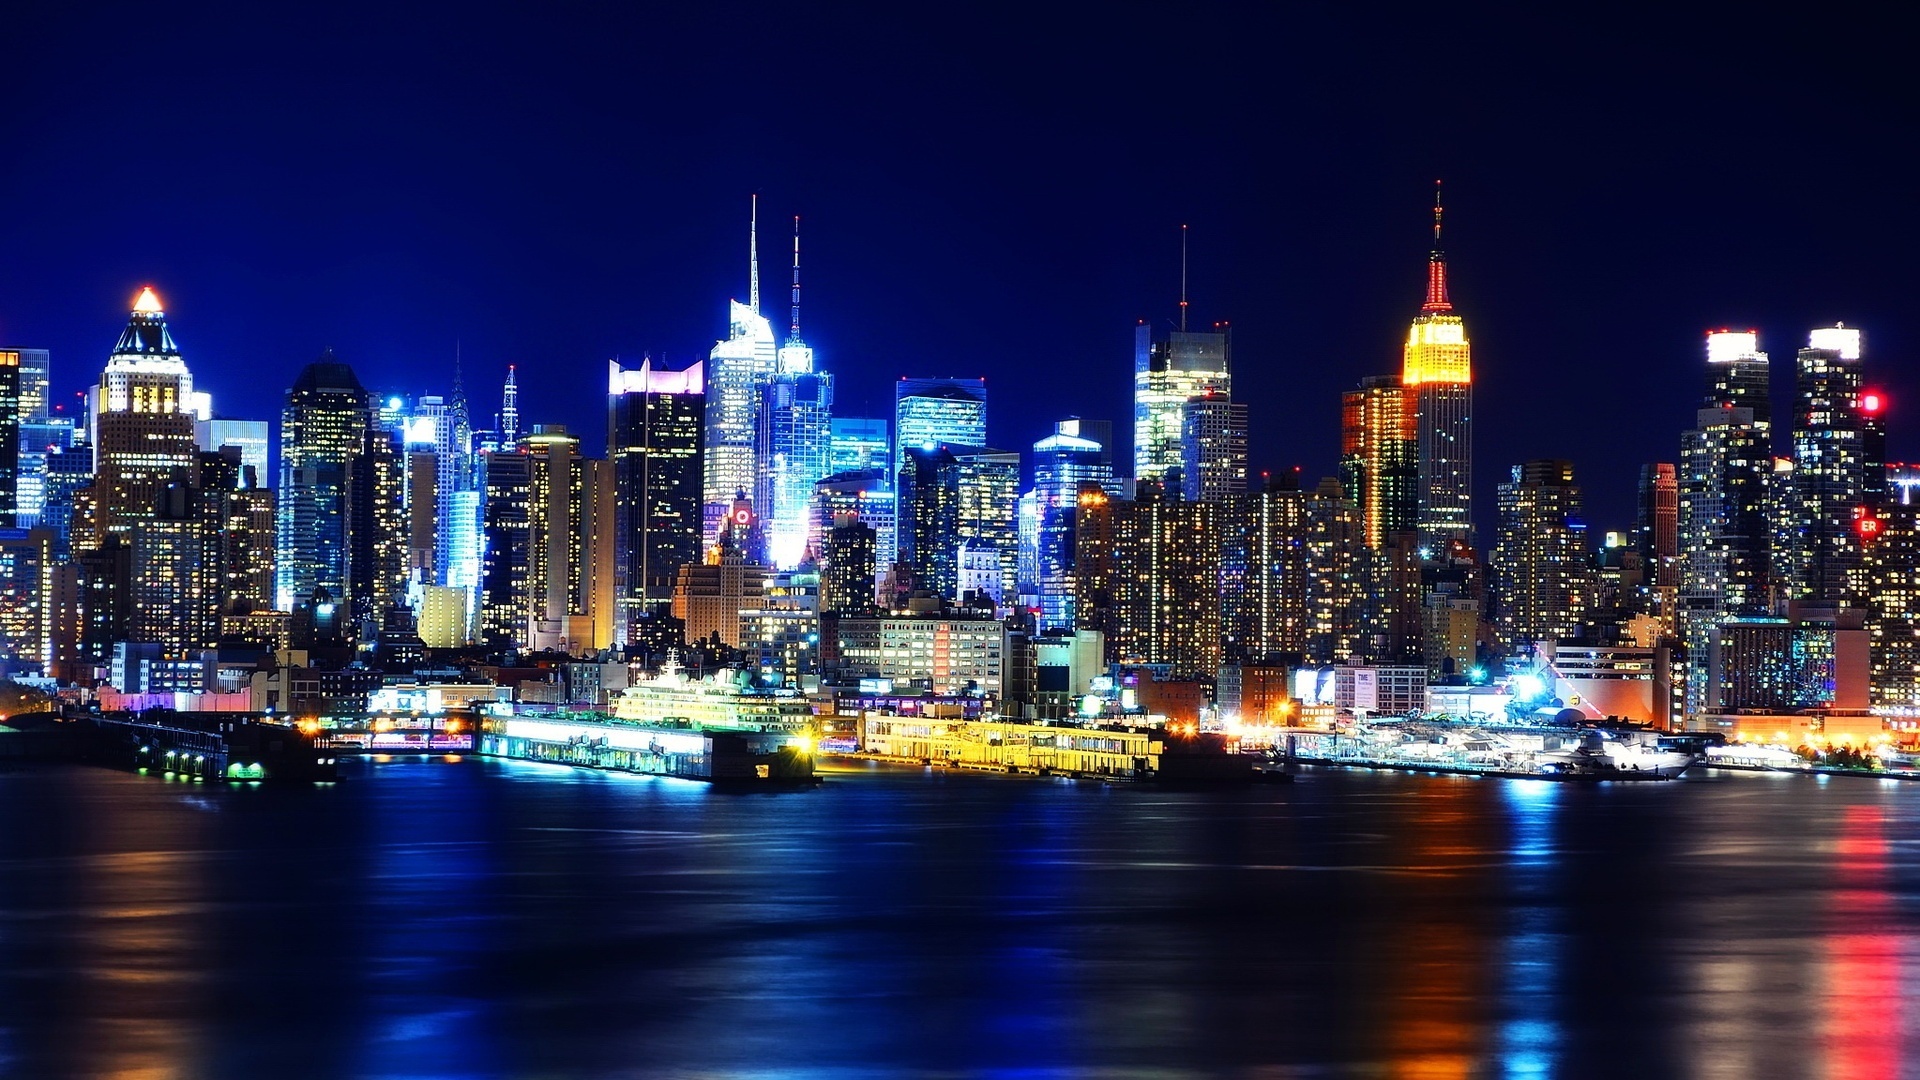 Hãy đắm mình trong ánh sáng lung linh và phép màu của thành phố New York vào ban đêm bằng hình nền New York City at Night wallpaper. Một bức ảnh đẹp, quyến rũ và đầy hoài niệm về một thời điểm đặc biệt trong tâm trí những người yêu thích thành phố này. Đây là lúc để tận hưởng trọn vẹn khung cảnh đêm tuyệt đẹp này.